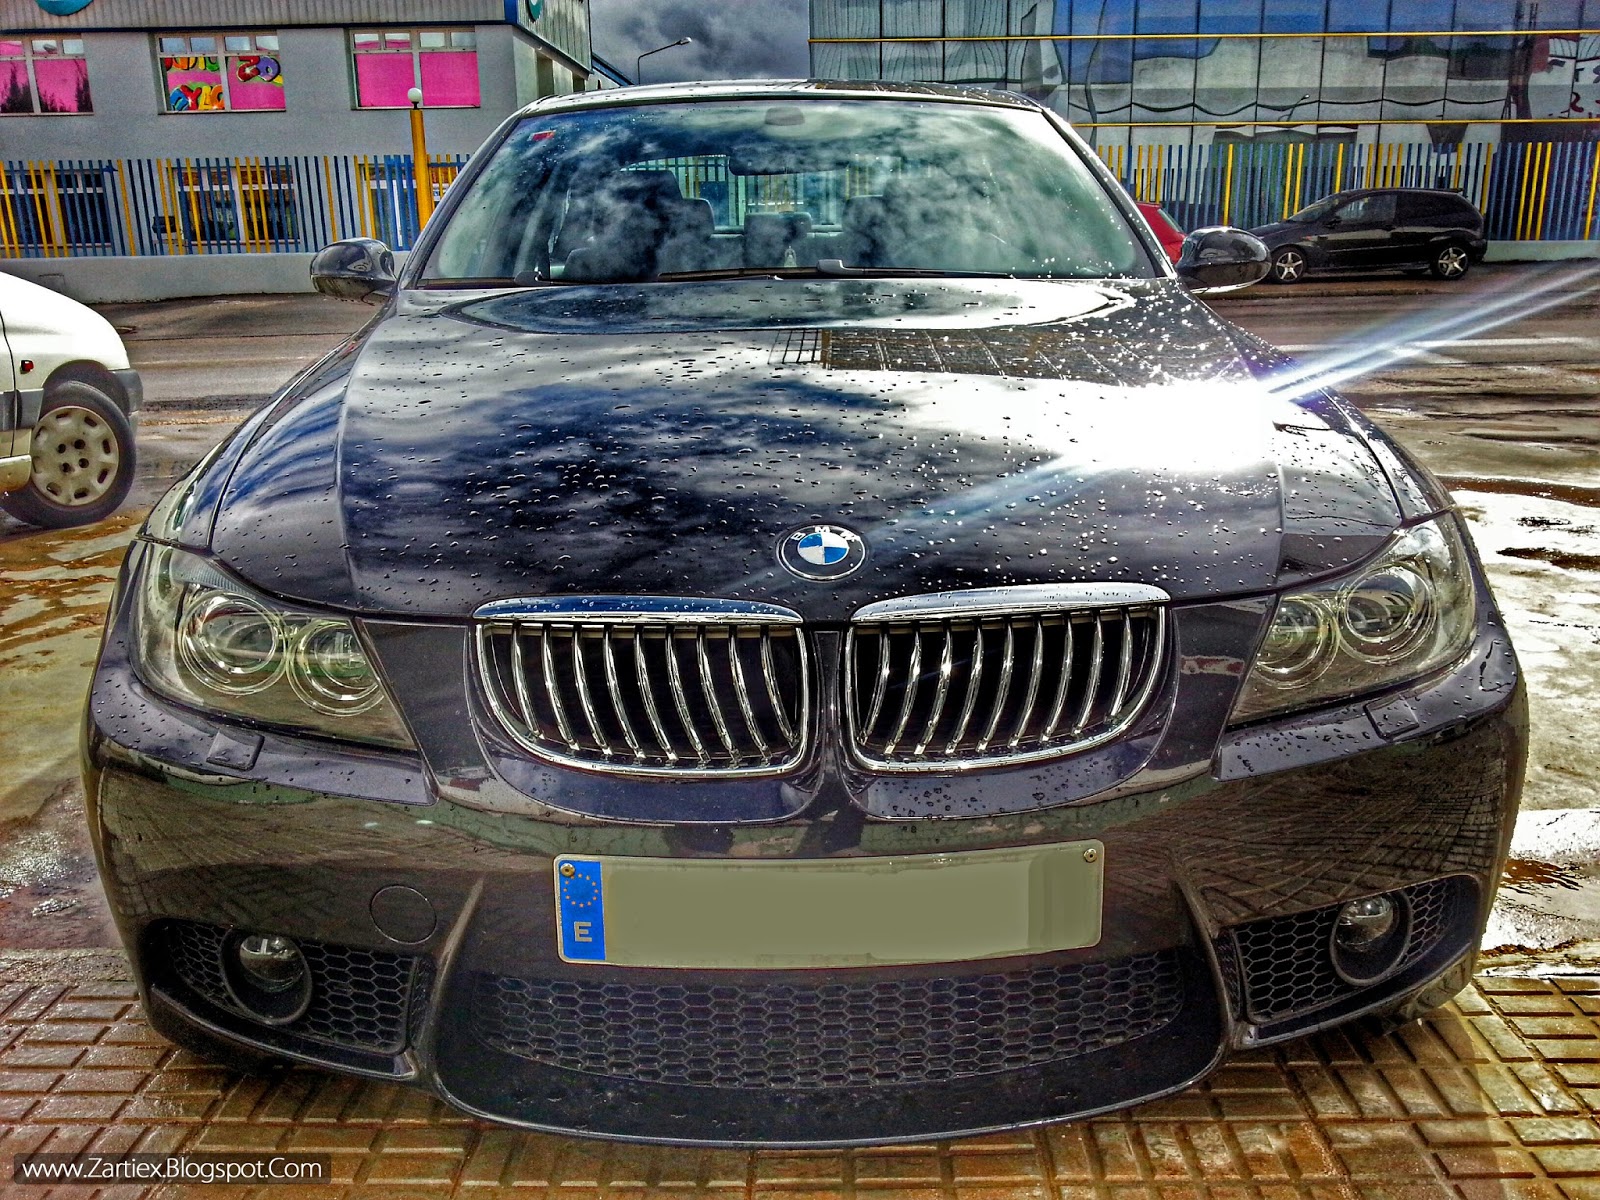 BMW+sports+car+-+BMW+used+cars+2014.jpg